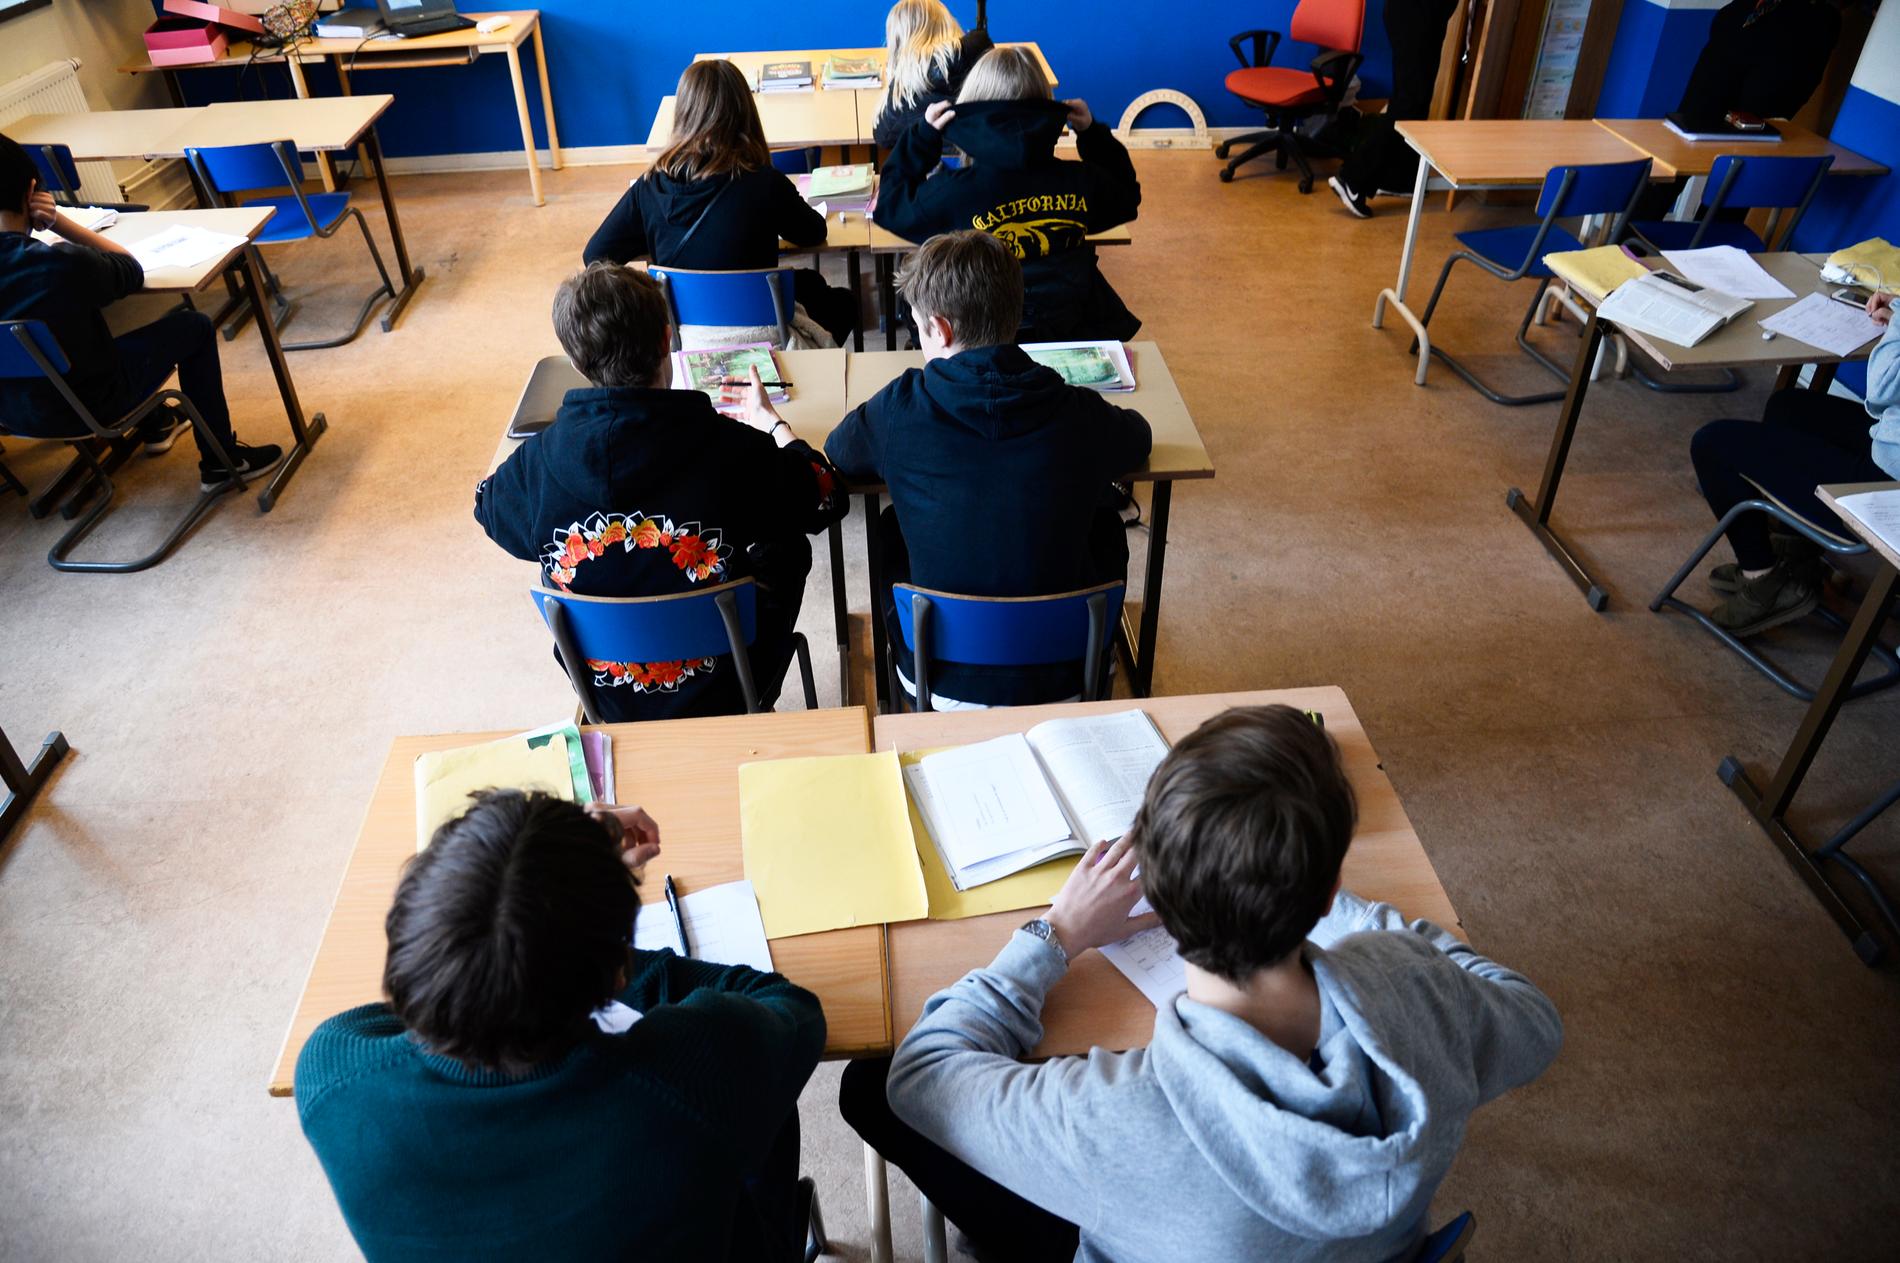 Att kunna dela ansvaret för en klass med en kollega kan locka fler legitimerade lärare till utsatta skolor, tror Åsa Fahlén, ordförande i Lärarnas Riksförbund.